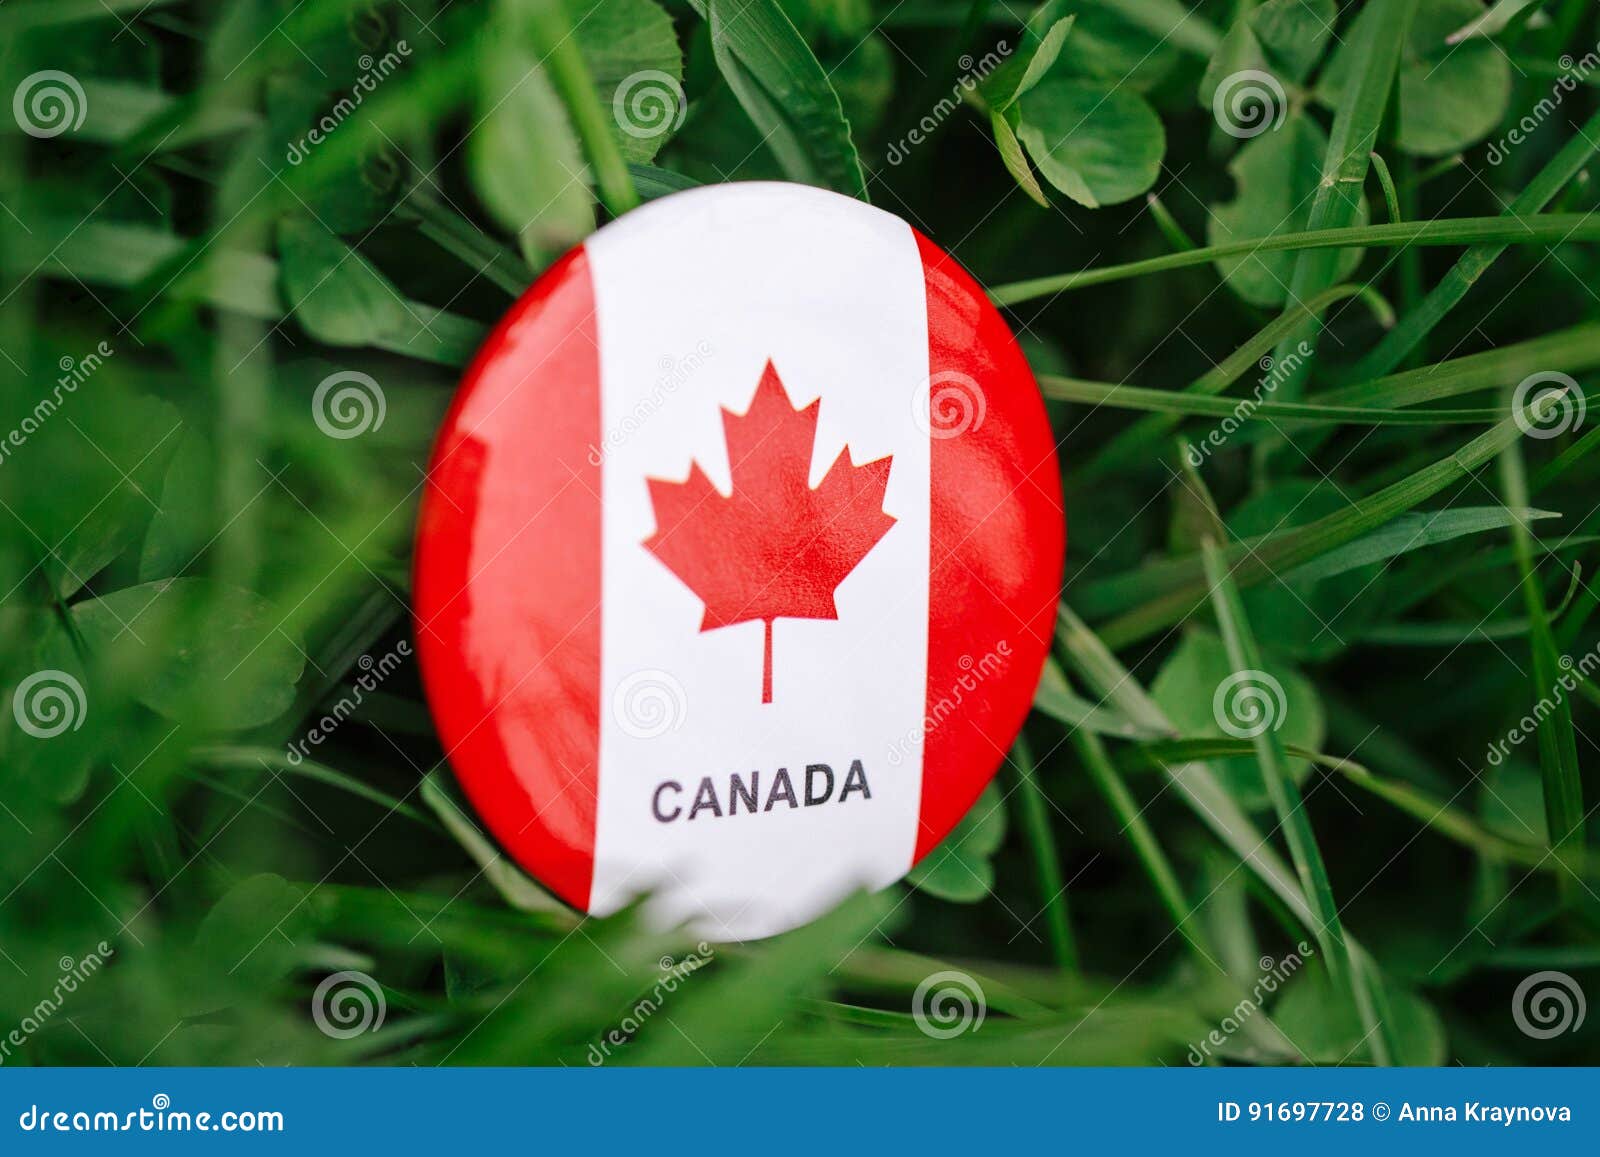 Cờ Canada là biểu tượng toàn cầu của nước này với các màu sắc quen thuộc và thiết kế đẹp mắt. Hãy xem hình ảnh và cùng khám phá các chi tiết thú vị của Quốc kỳ Canada!